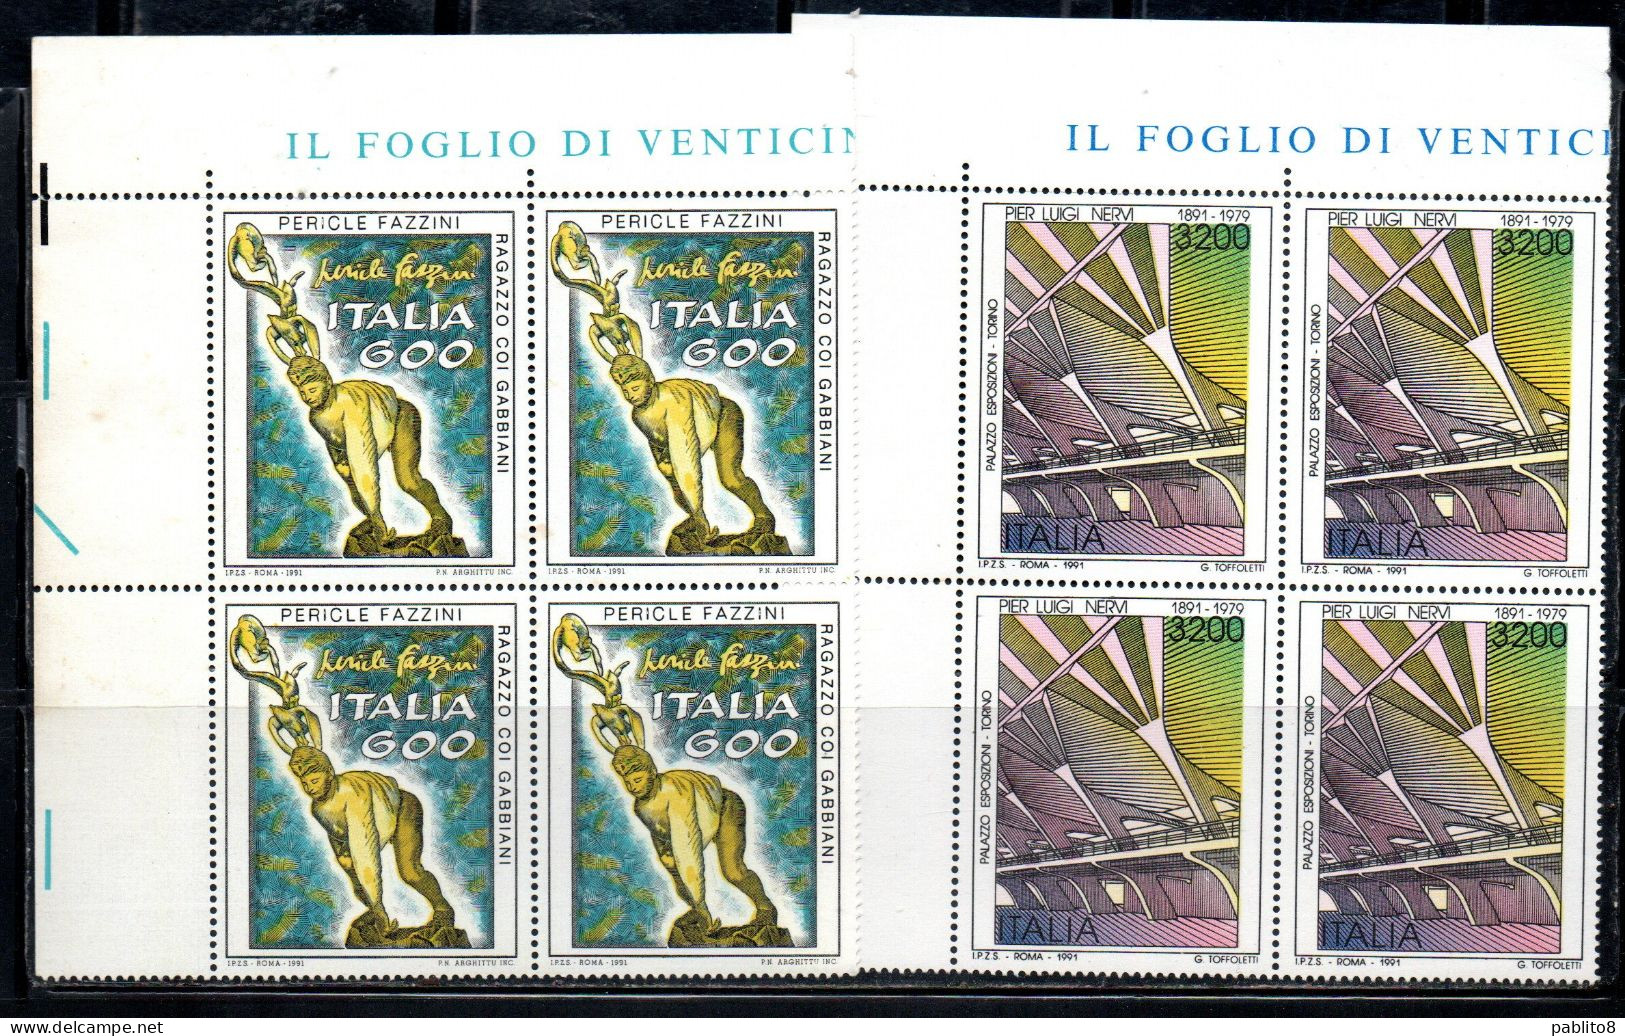 ITALIA REPUBBLICA ITALY REPUBLIC 1991 PATRIMONIO ARTISTICO E CULTRALE SERIE SET QUARTINA ANGOLO DI FOGLIO MNH - 1991-00: Mint/hinged